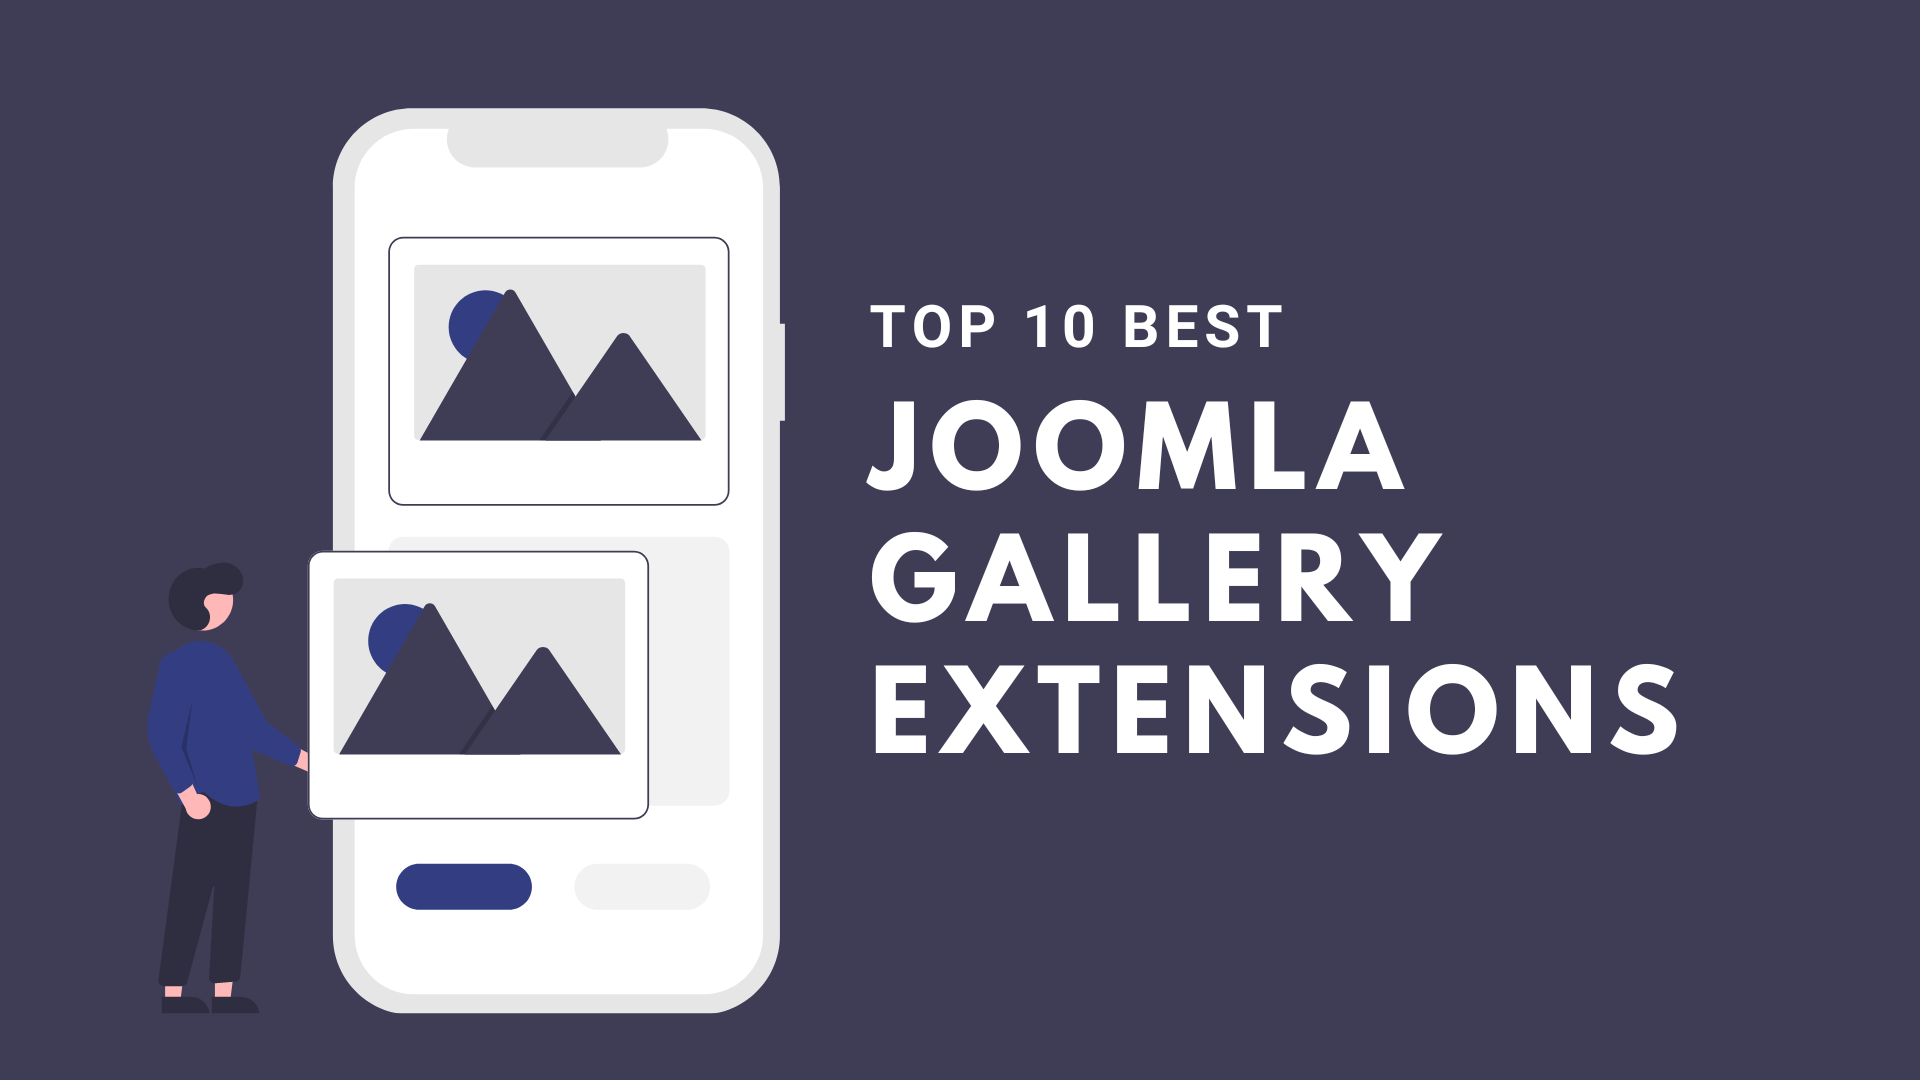 Joomla News: Top 10 Best Joomla Gallery Extensions